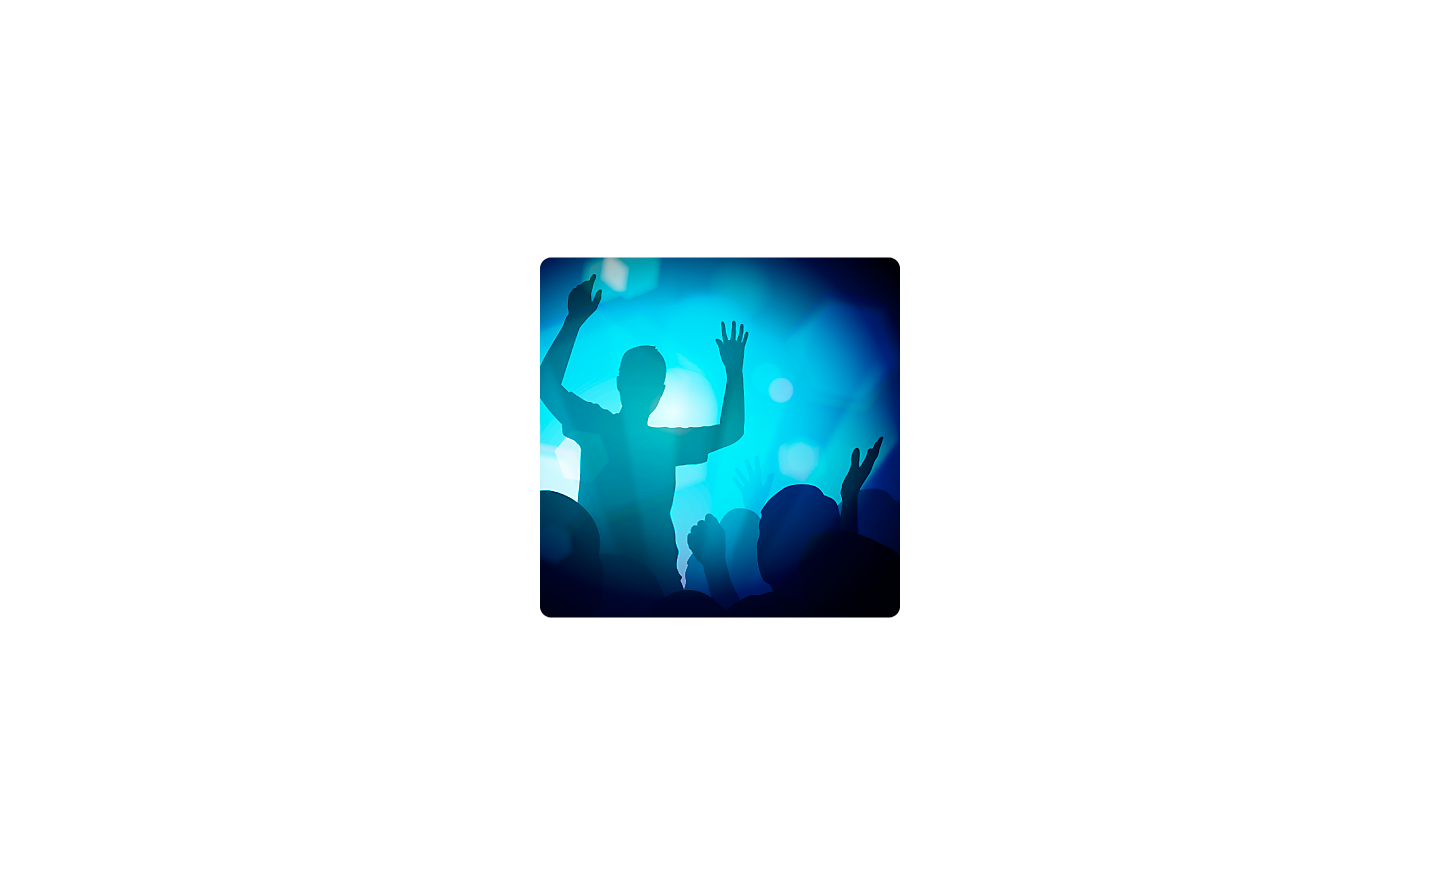 Εικόνα ενός ανθρώπου με τα χέρια ψηλά σε σκοτεινό περιβάλλον με μπλε φωτισμό